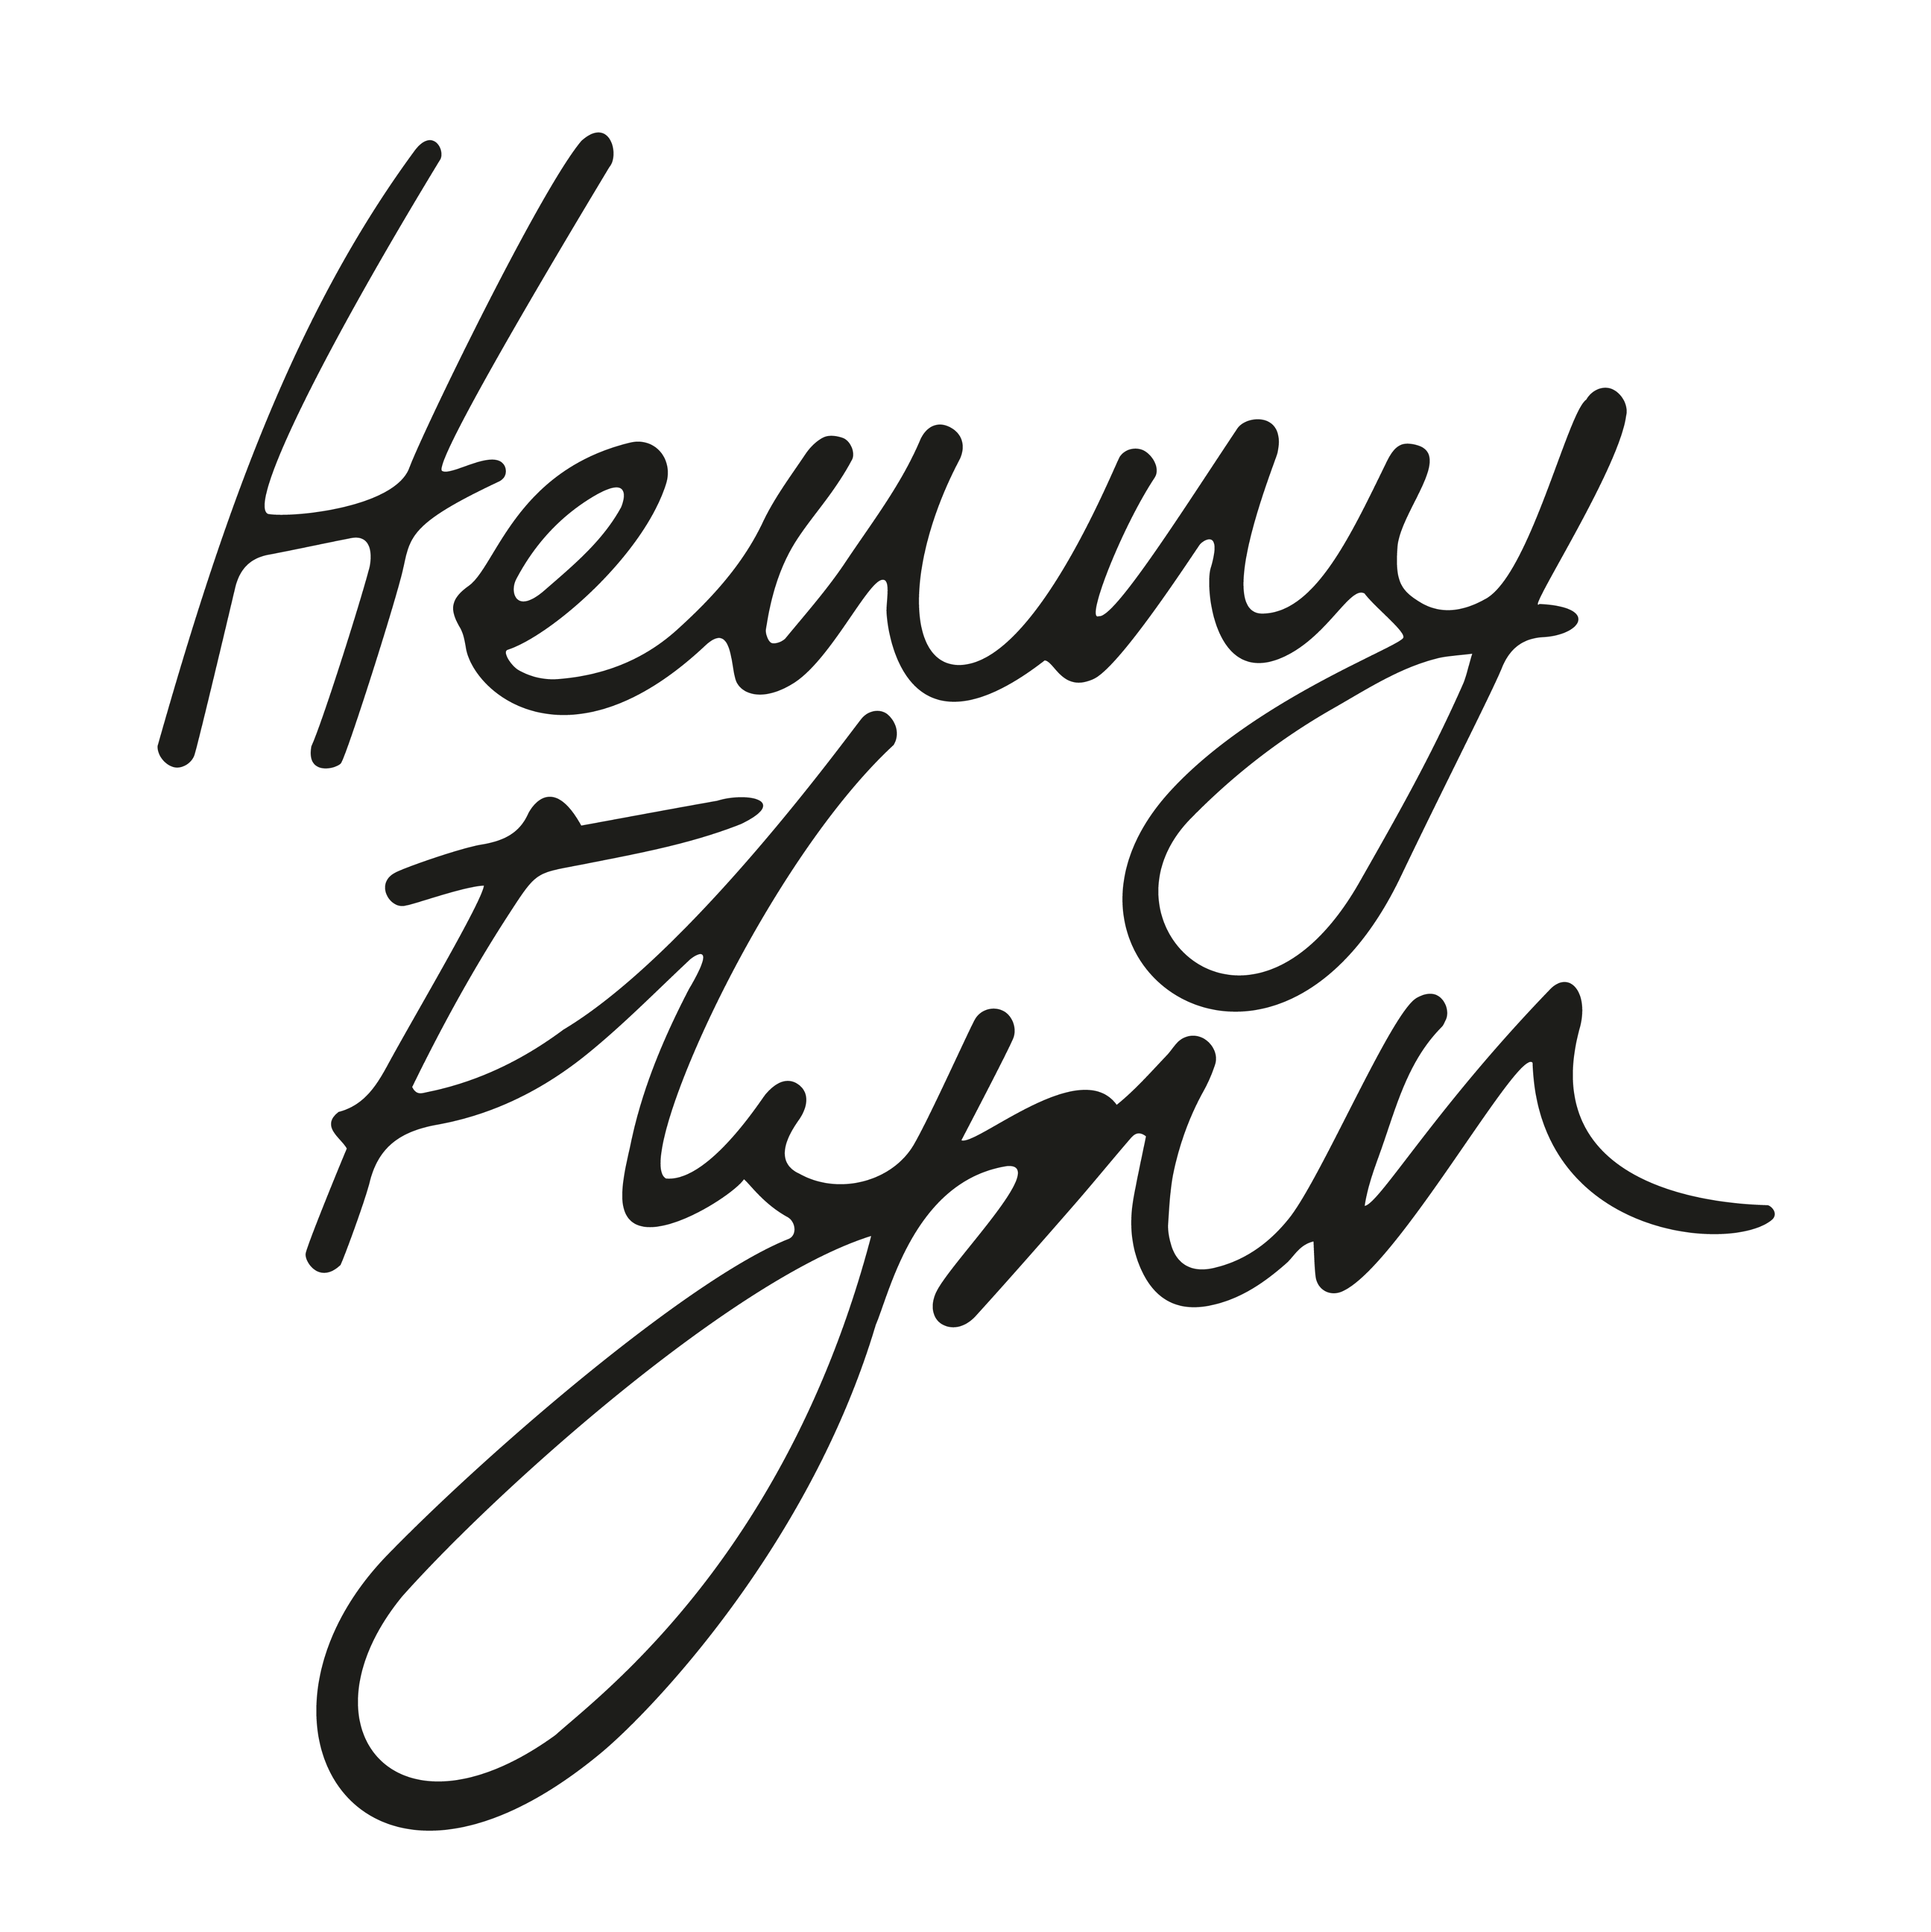 Henny Flynn logo